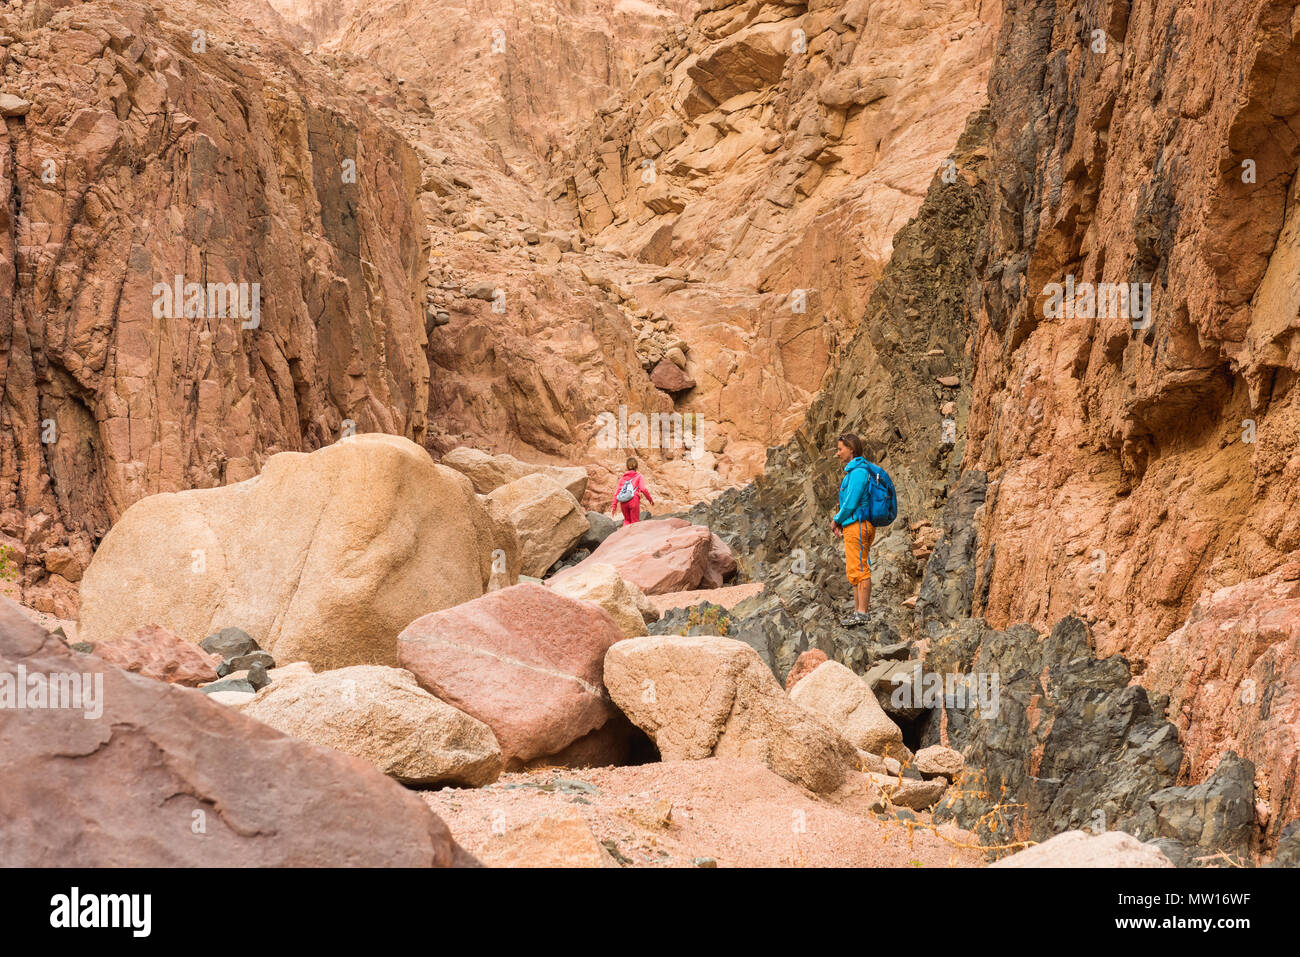 Frau Wanderer mit Rucksack genießen Sie Blick in Wüste Stockfoto